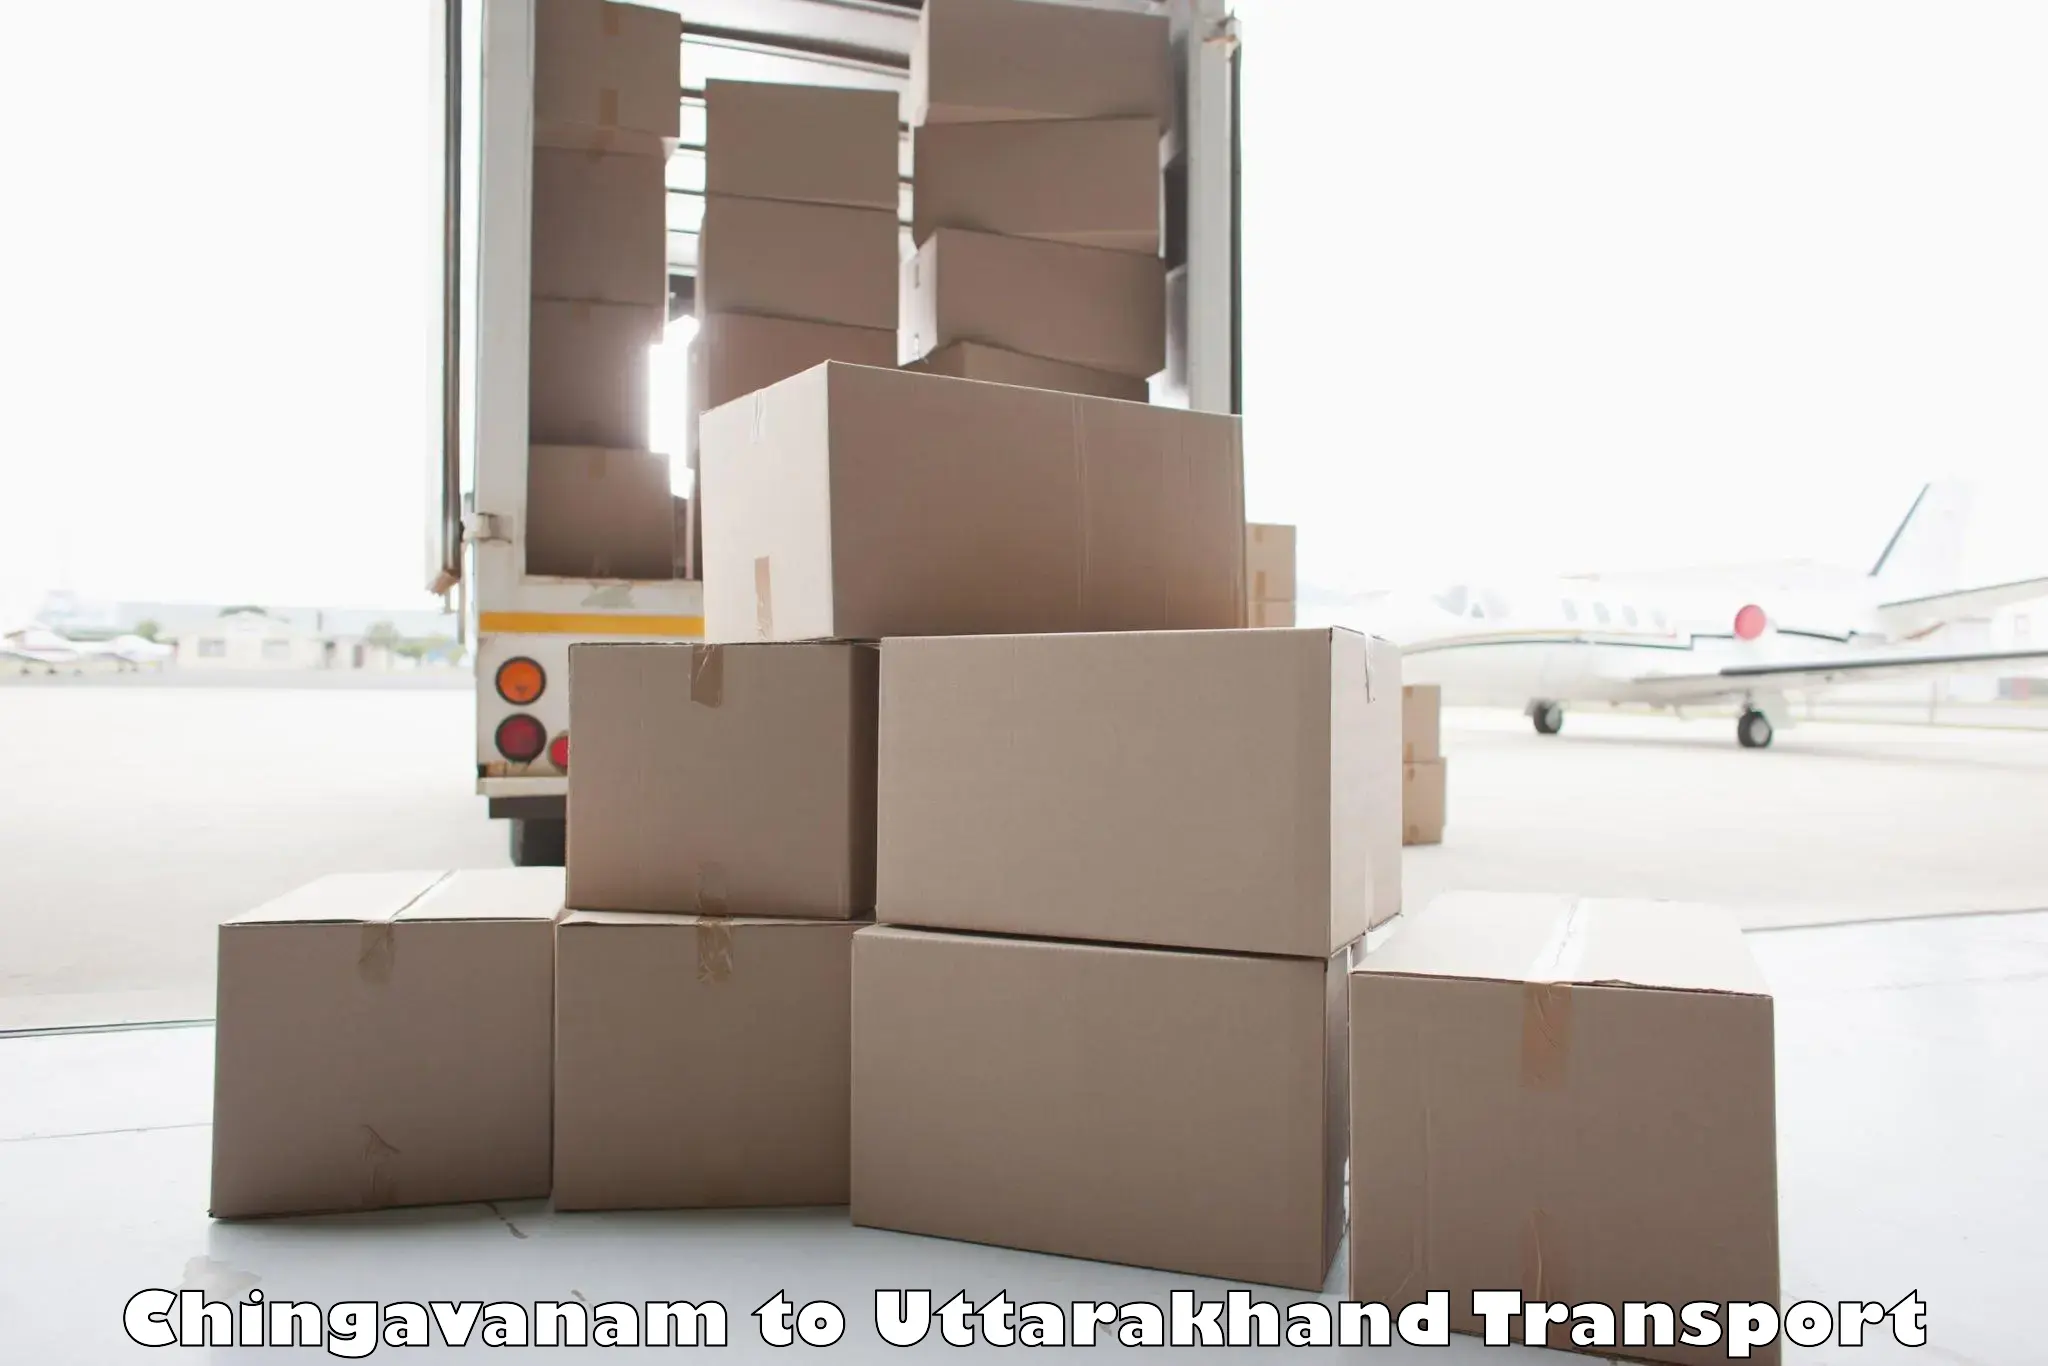 Truck transport companies in India Chingavanam to Uttarakhand